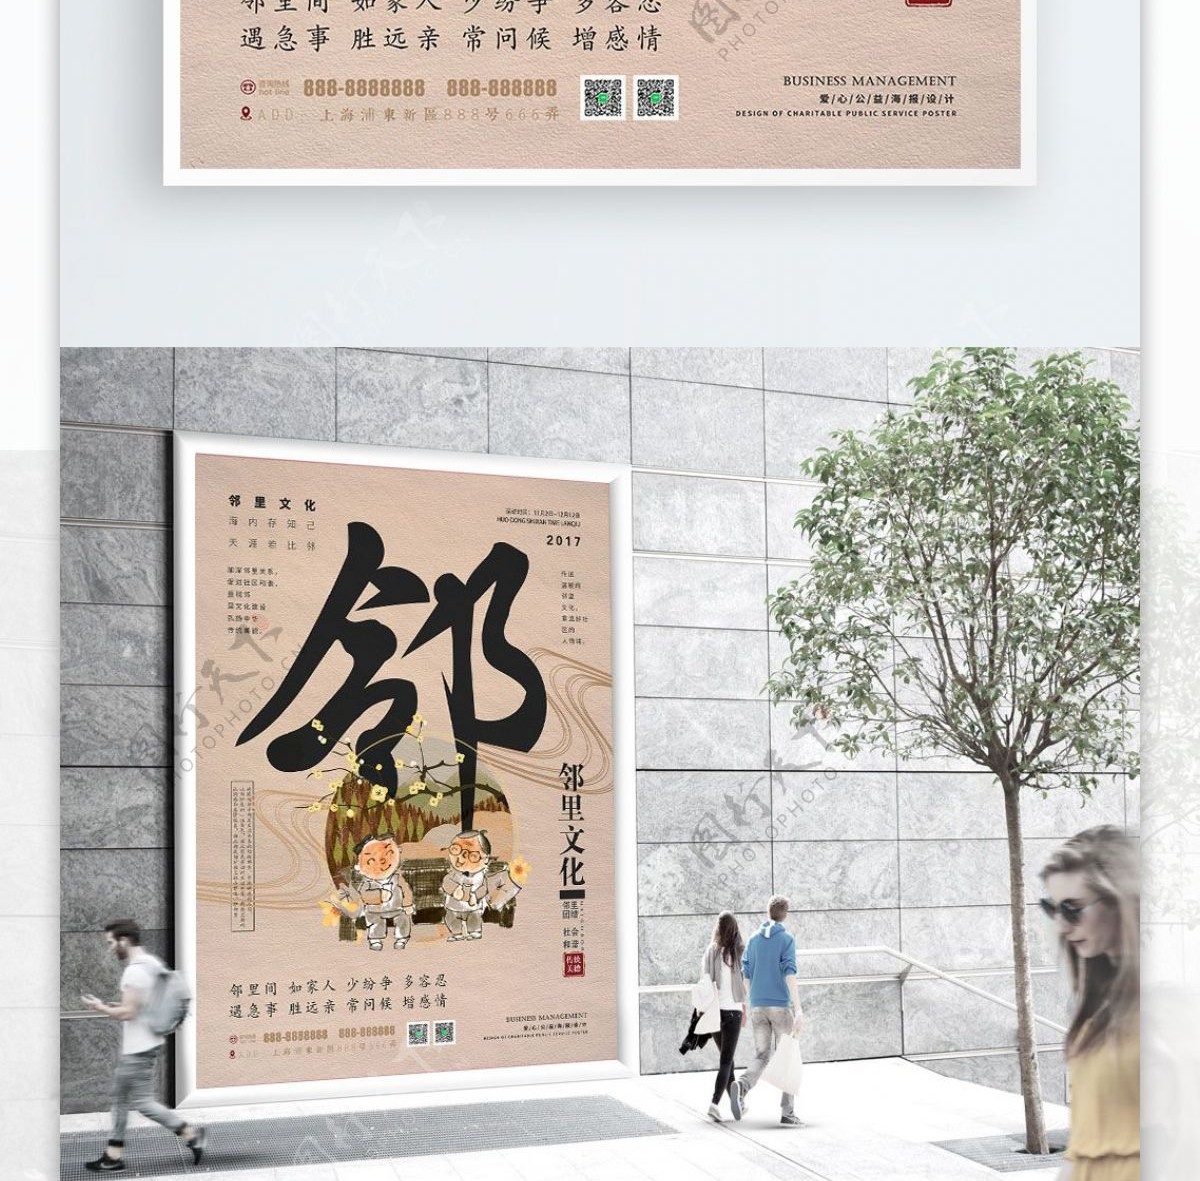 米色中国风简约邻里文化公益海报